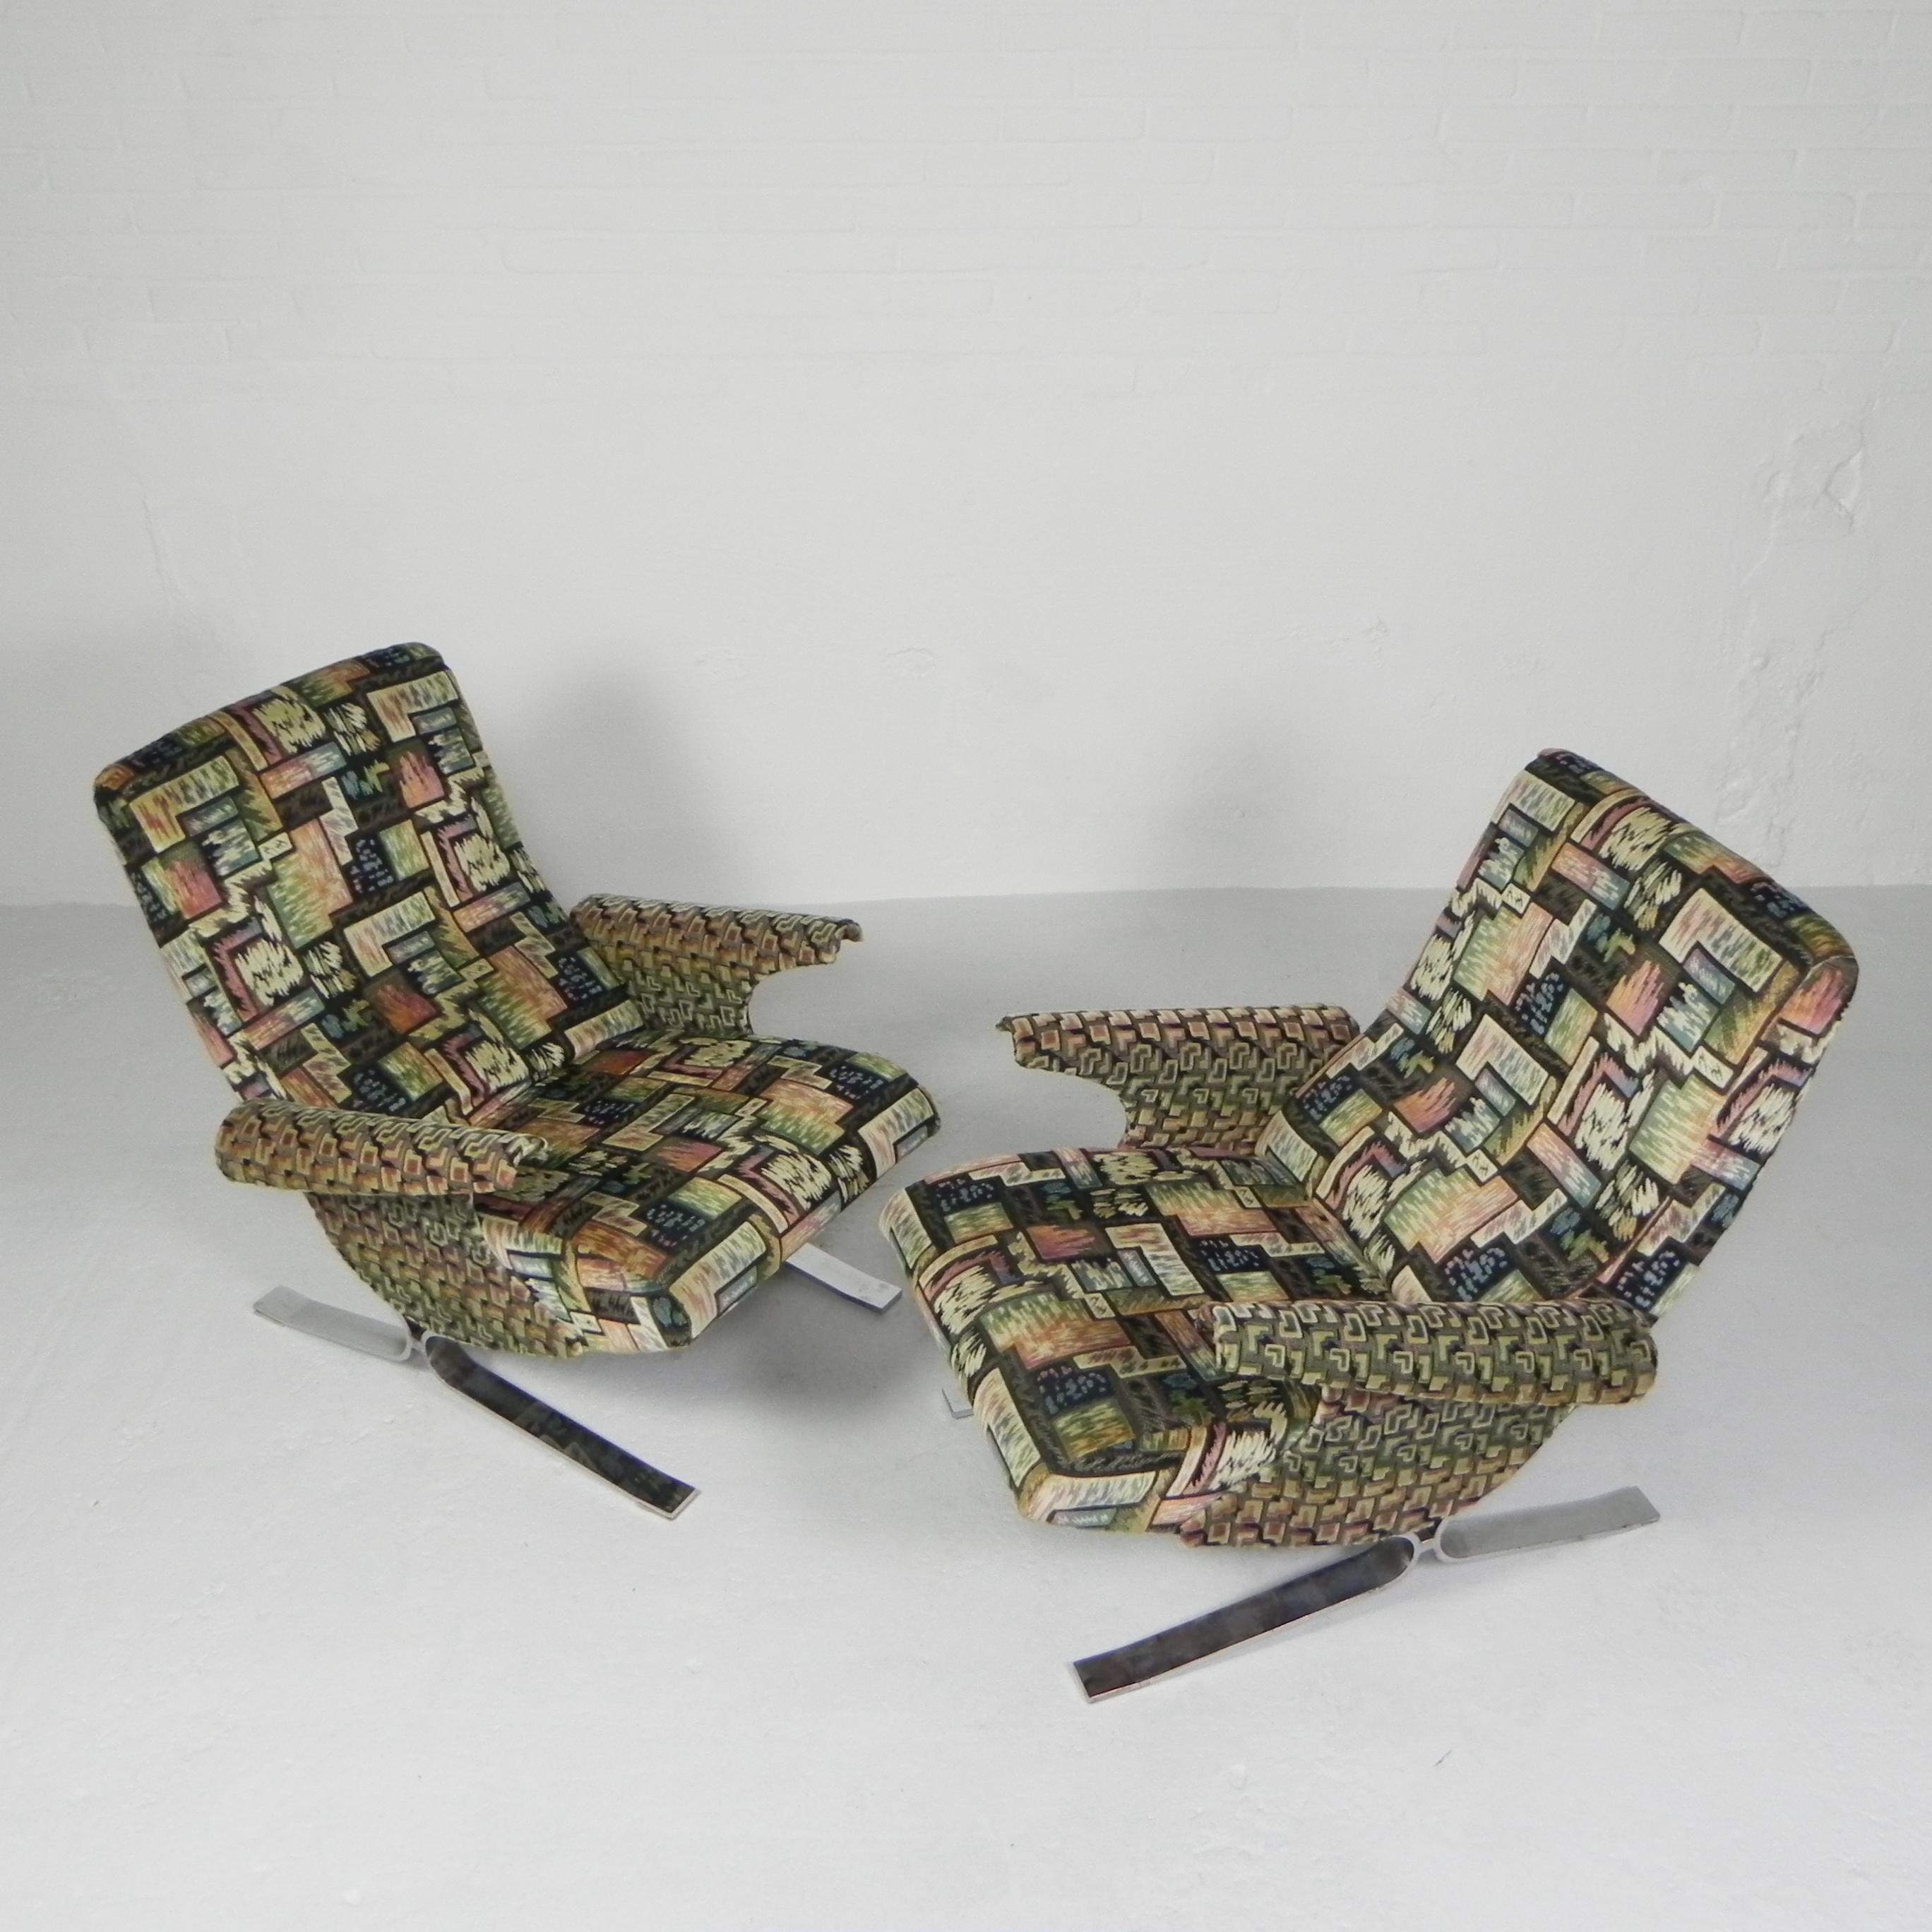 Ces chaises ont été spécialement rembourrées dans les années 1960
pour une émission de télévision française. Ils sont d'une coupe parfaite !
Vous sentirez-vous bientôt comme Depardieu ou Deneuve ?

Hauteur : 81 cm.
Largeur : 72 cm.
Profondeur : 90